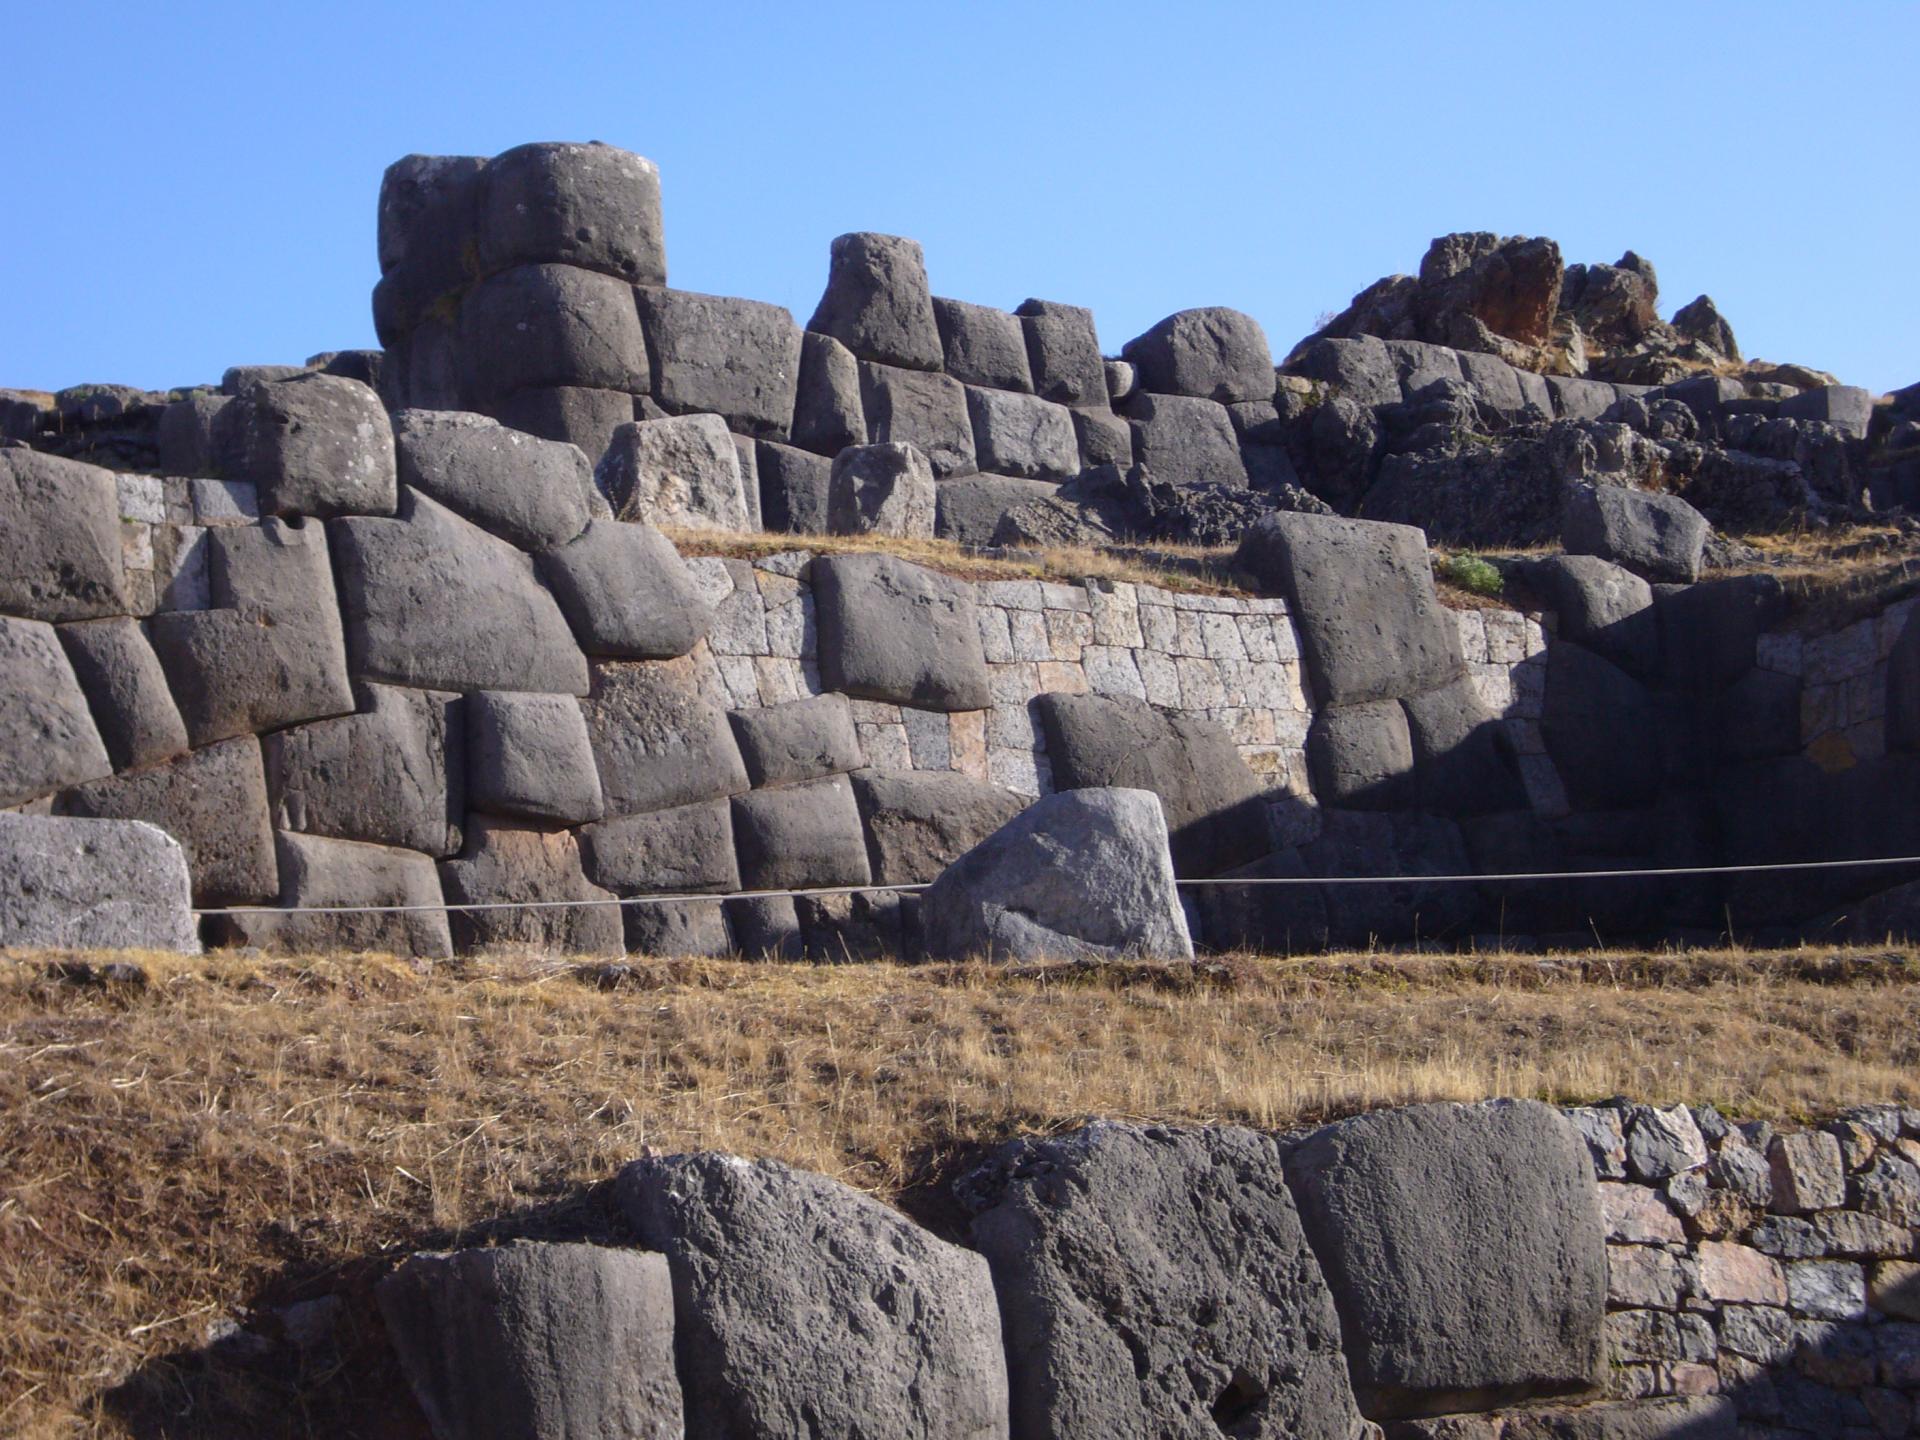 Entdecken Sie das Heilige Tal der Inka mit seinen einzigartigen Bauten in Peru